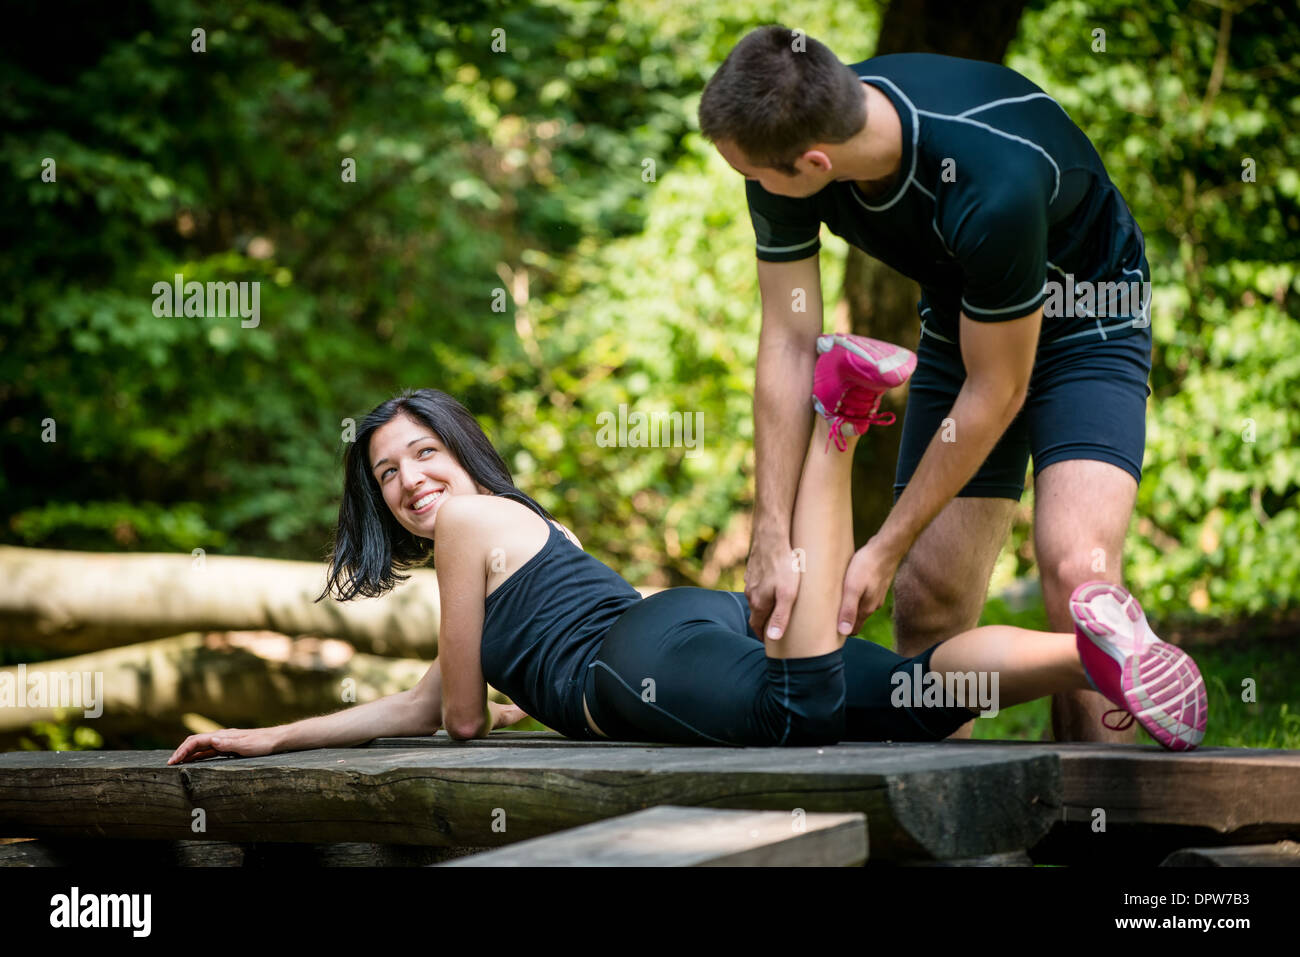 Entspannen Sie nach dem Sport - Mann massiert Kalb seines Freundes outdoor - Frau liegt auf Bank Stockfoto